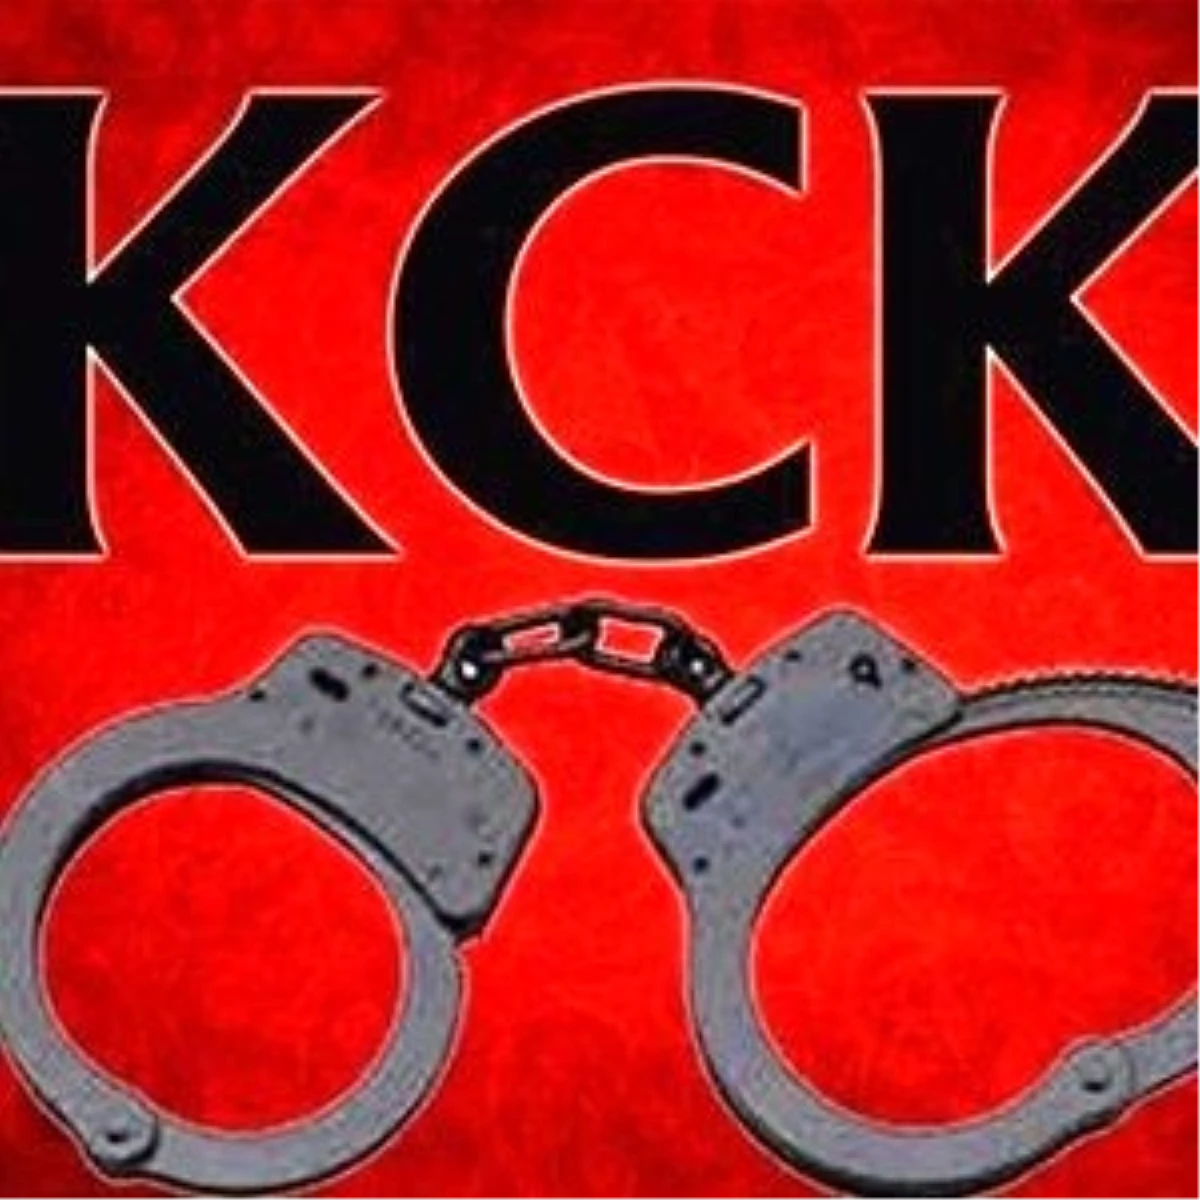 Kck Soruşturmasında 14 Kişiye Tutuklama İstemi